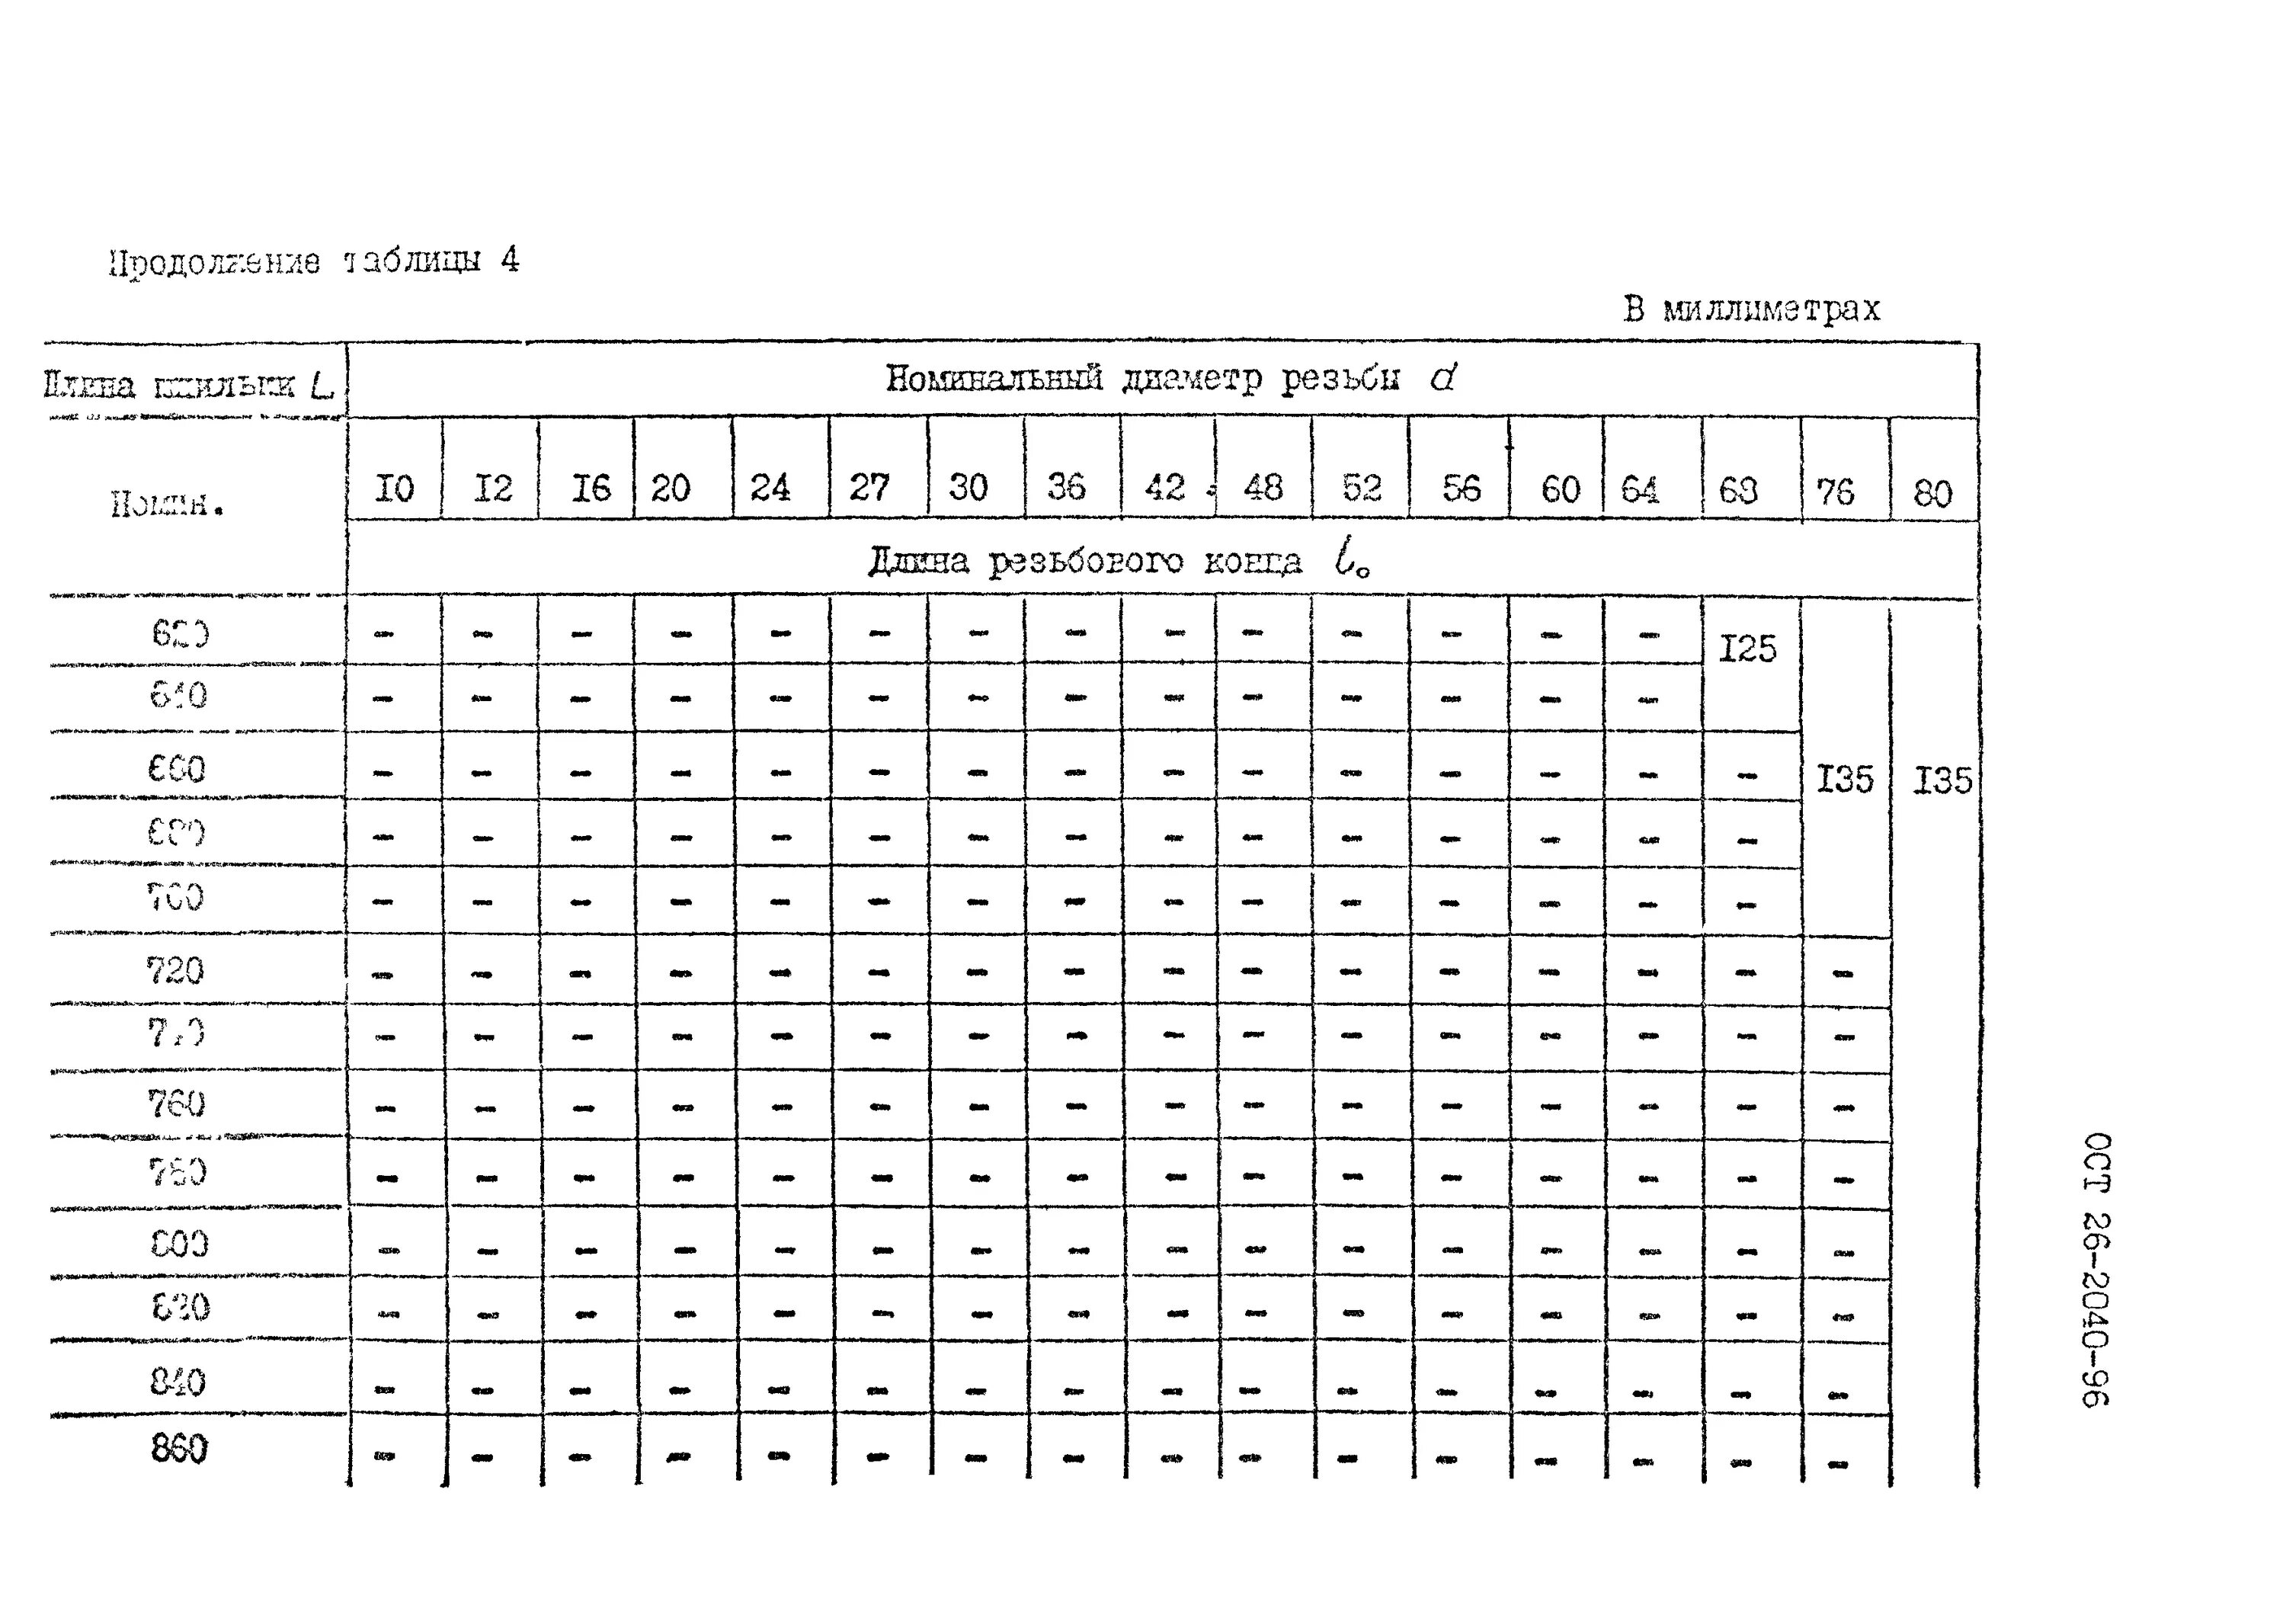 Фланцевые соединения таблица. Размер шпильки для фланцевых соединений. Длина шпилек для фланцевых соединений таблица. Шпильки для фланцевых соединений таблица. Размеры шпилек для фланцевых соединений таблица.